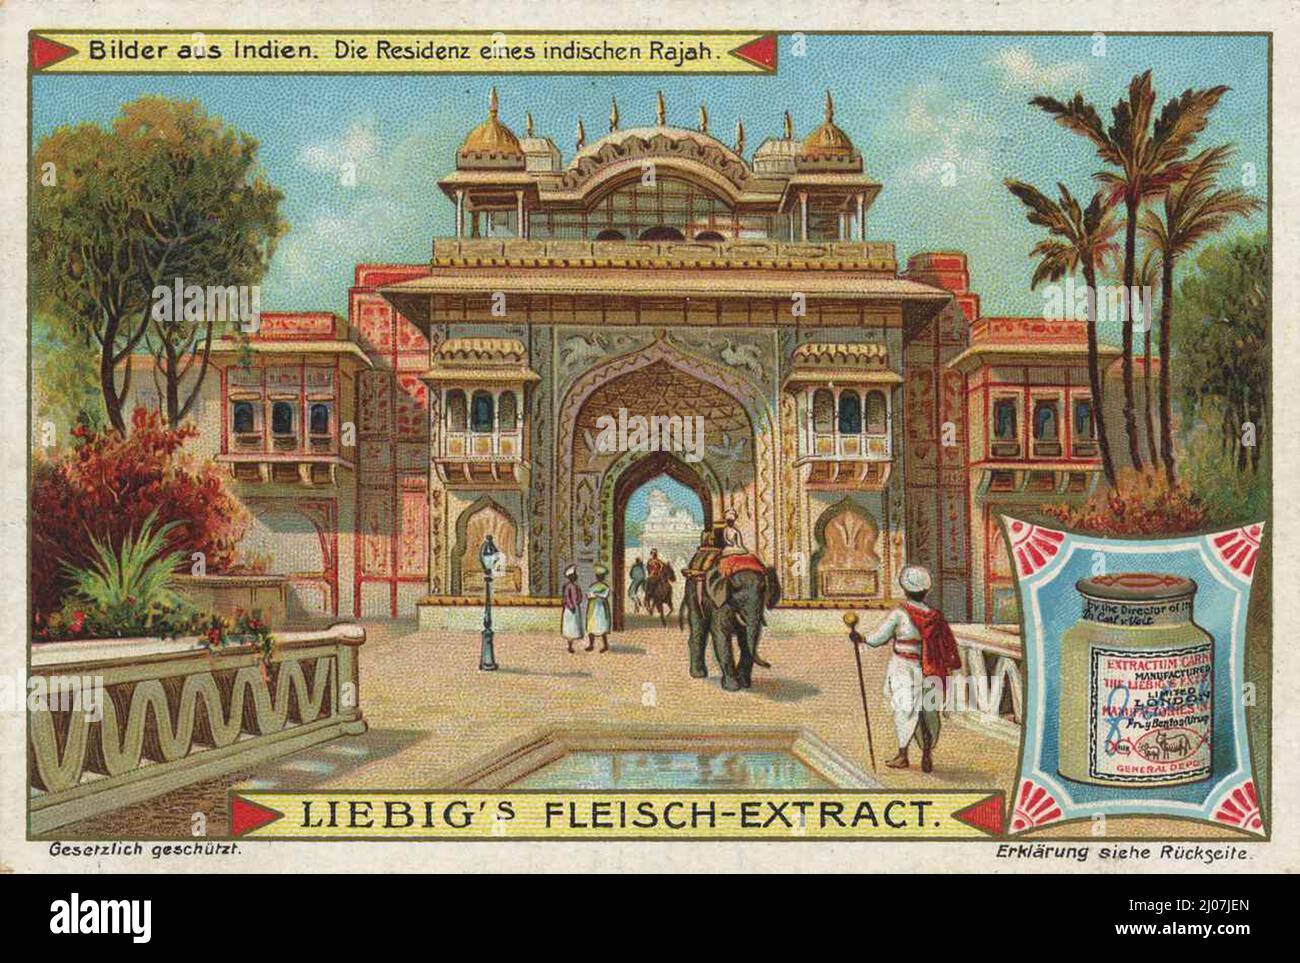 Serie Bilder aus Indien, die Residenz eines indischen Rajah / Serie Bilder aus Indien, die Residenz eines indischen Rajah, Liebigbild, digital verbesserte Reproduktion eines Sammelbildes der Firma Liebig, geschätzt ab 1900, pd / digital restaurierte Produktion eines Sammelbildes von ca 1900, gemeinfrei Stockfoto